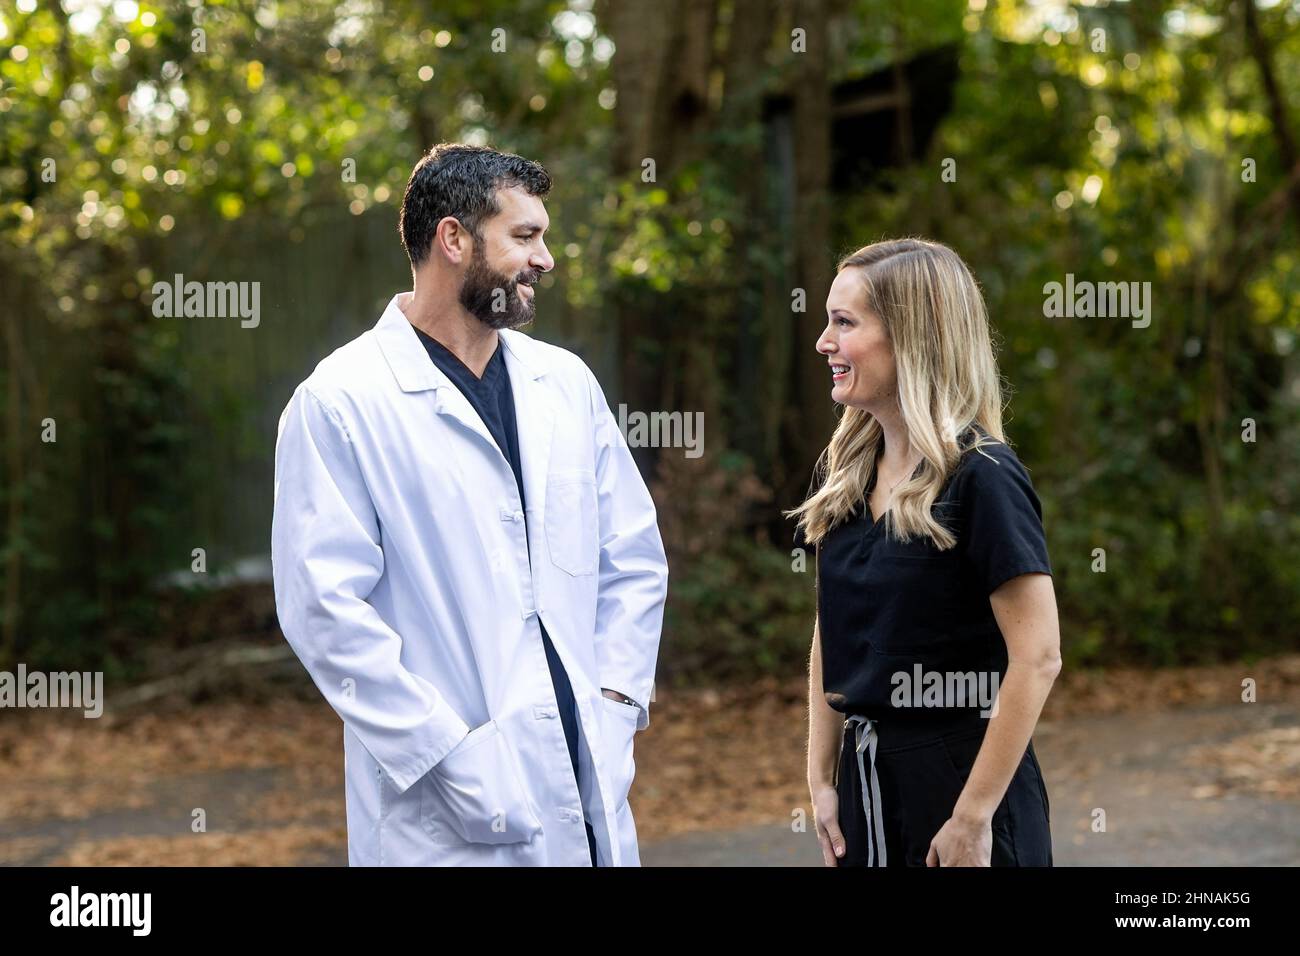 Ein Arzt mit dunklem Haar und einem Bart in schwarzen Peelings und einem weißen Laborkittel, der draußen steht und mit einer medizinischen Fachkrankenschwester spricht Stockfoto